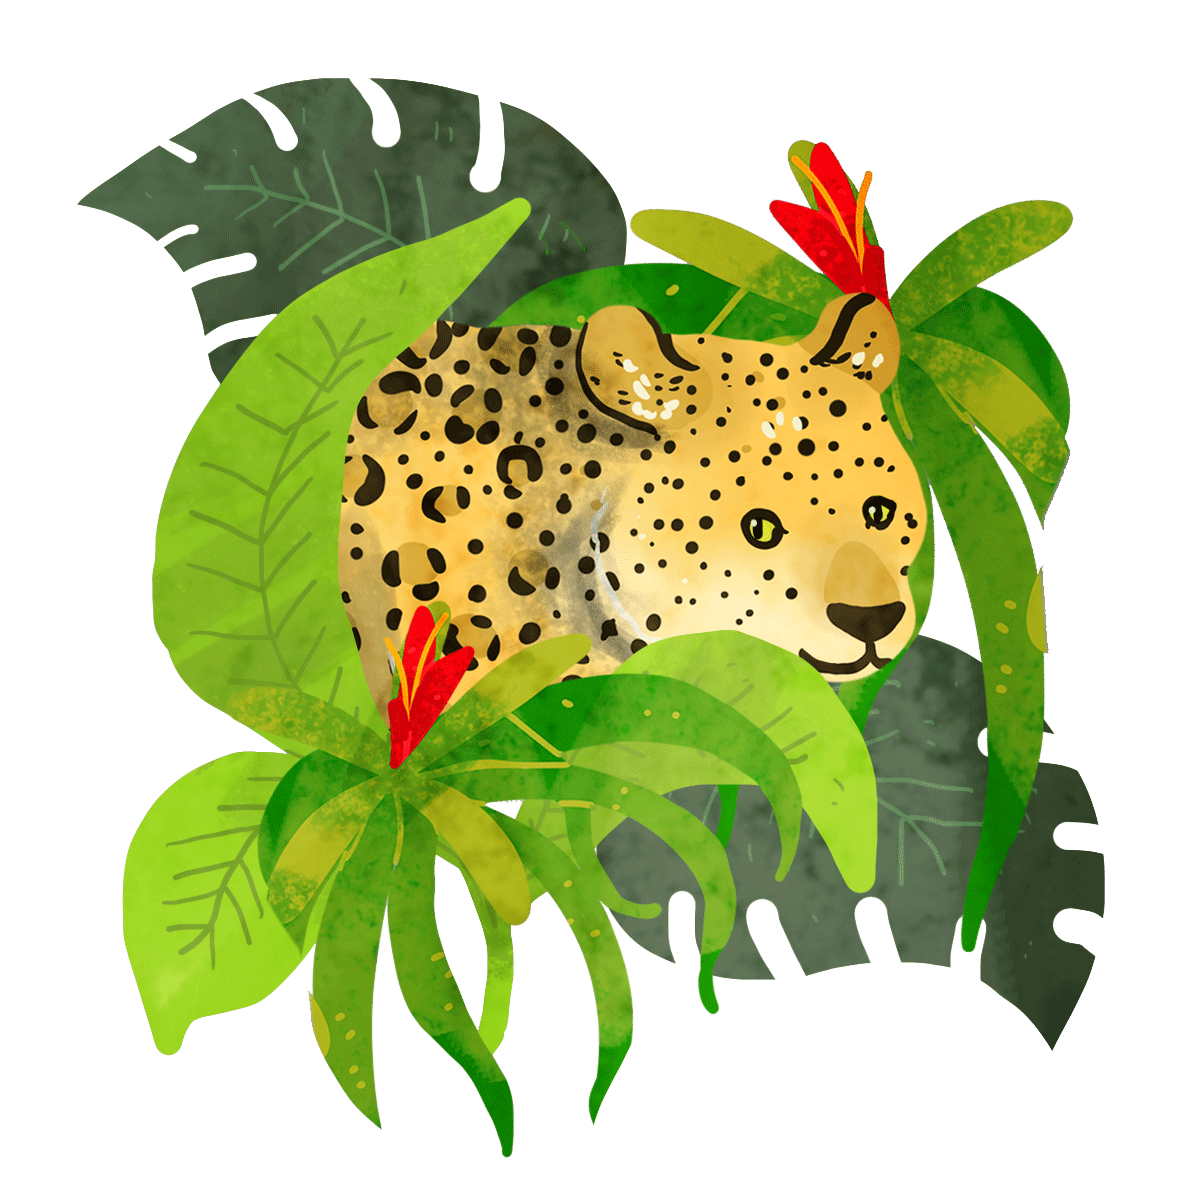 gif sticker on behance illustration stickers rainforest animals medium